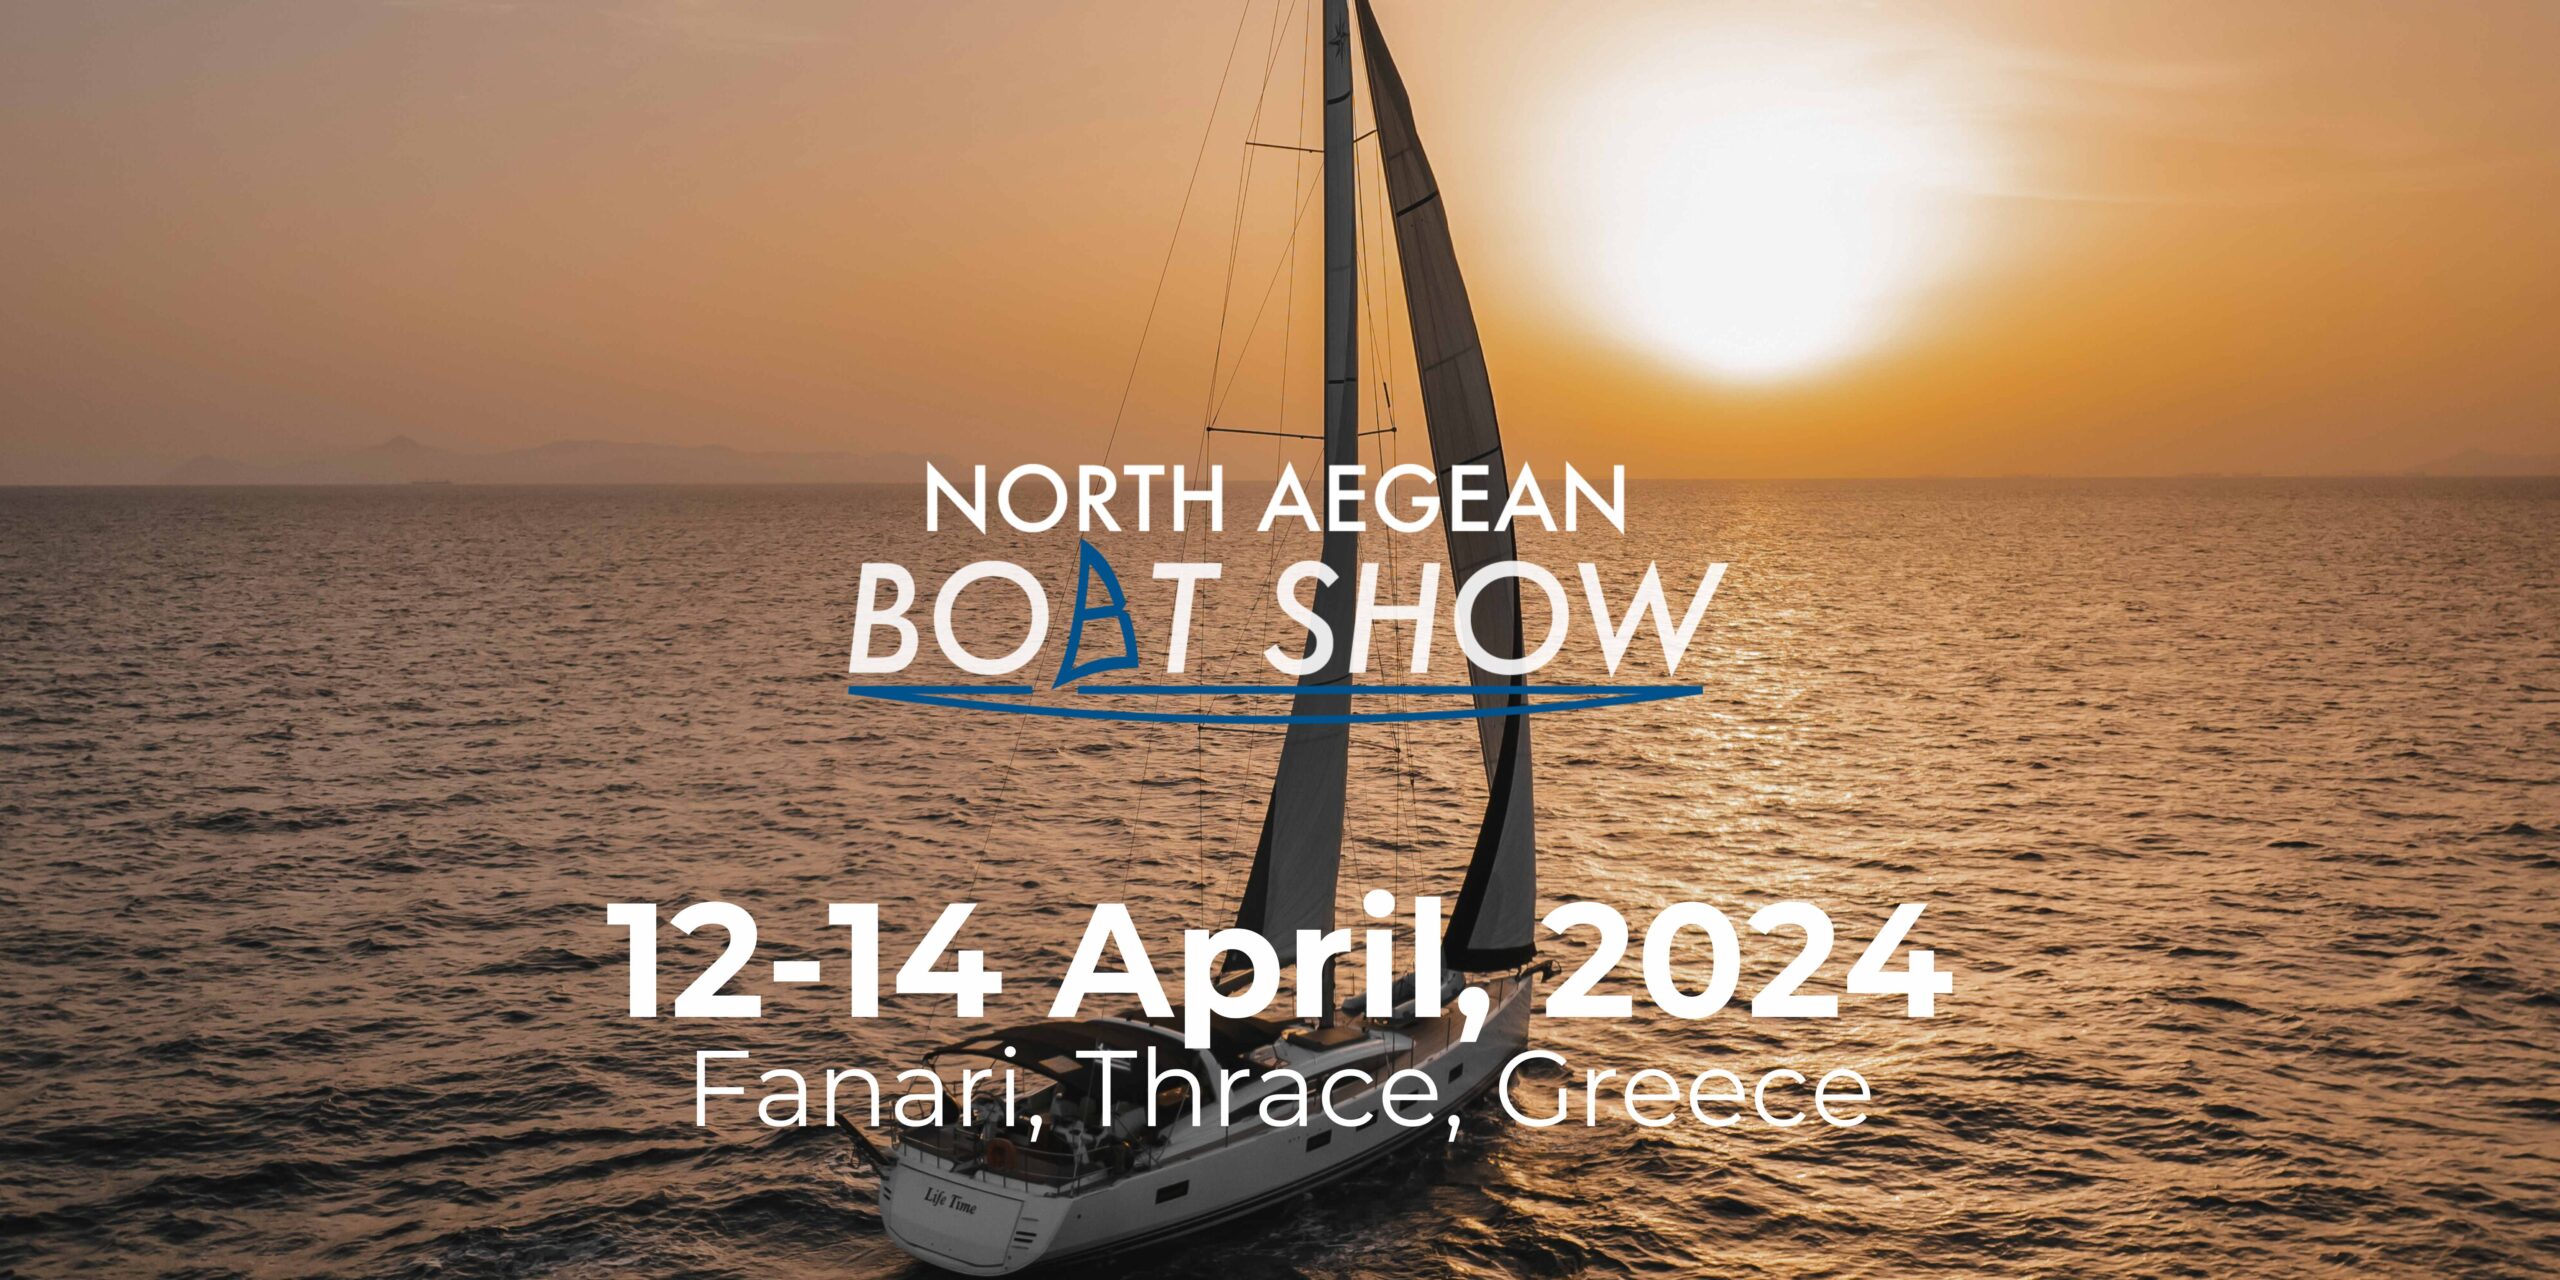 Ροδόπη: Το “North Aegean Boat Show 2024” έρχεται στο γραφικό Φανάρι του Δήμου Κομοτηνής